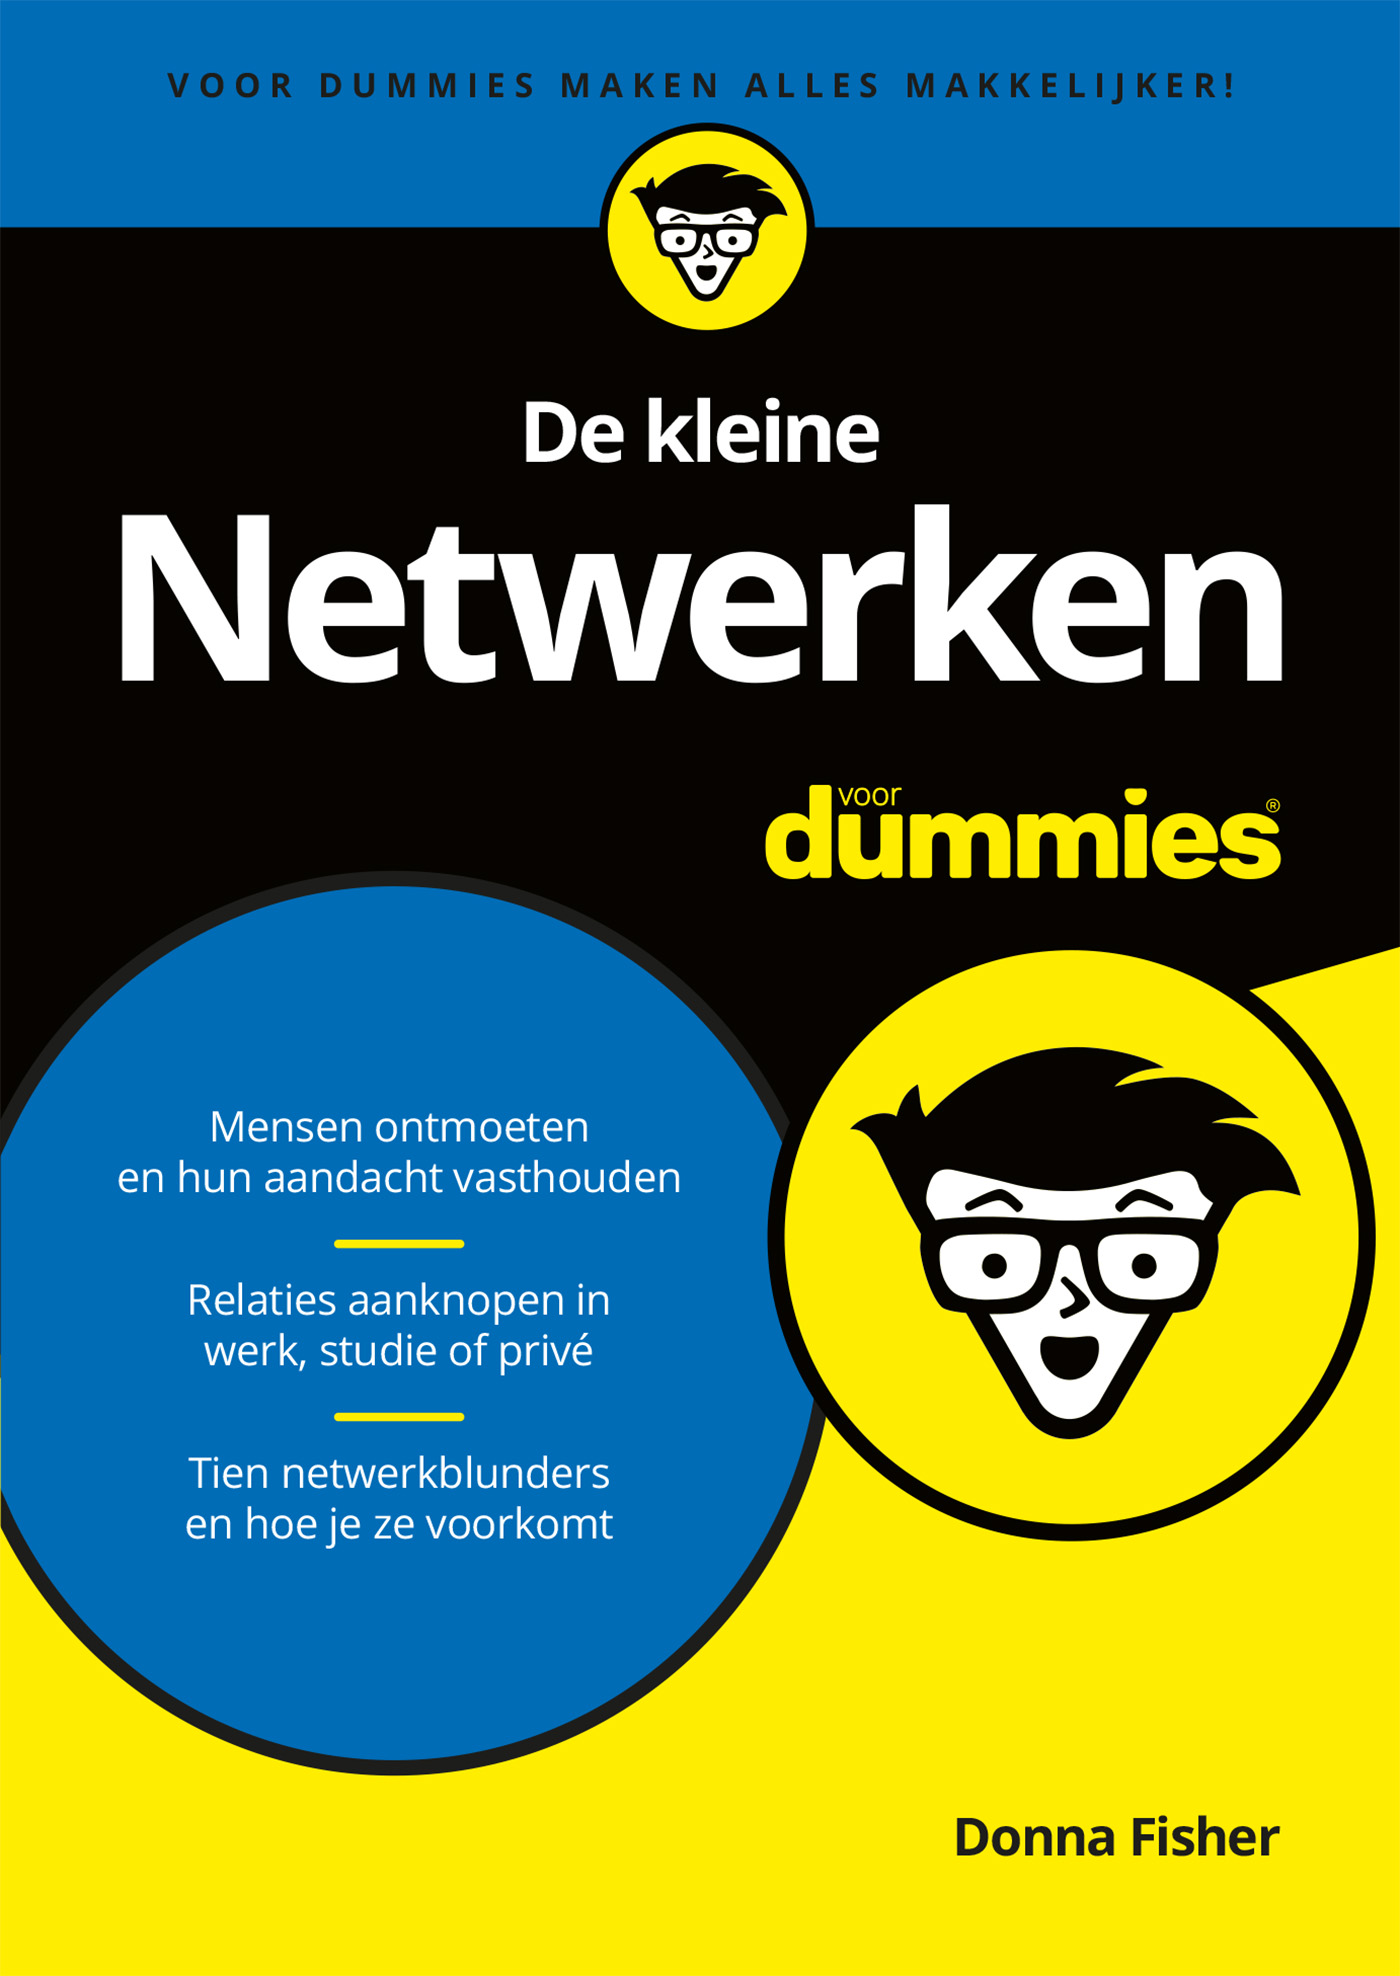 De kleine netwerken voor dummies (Ebook)